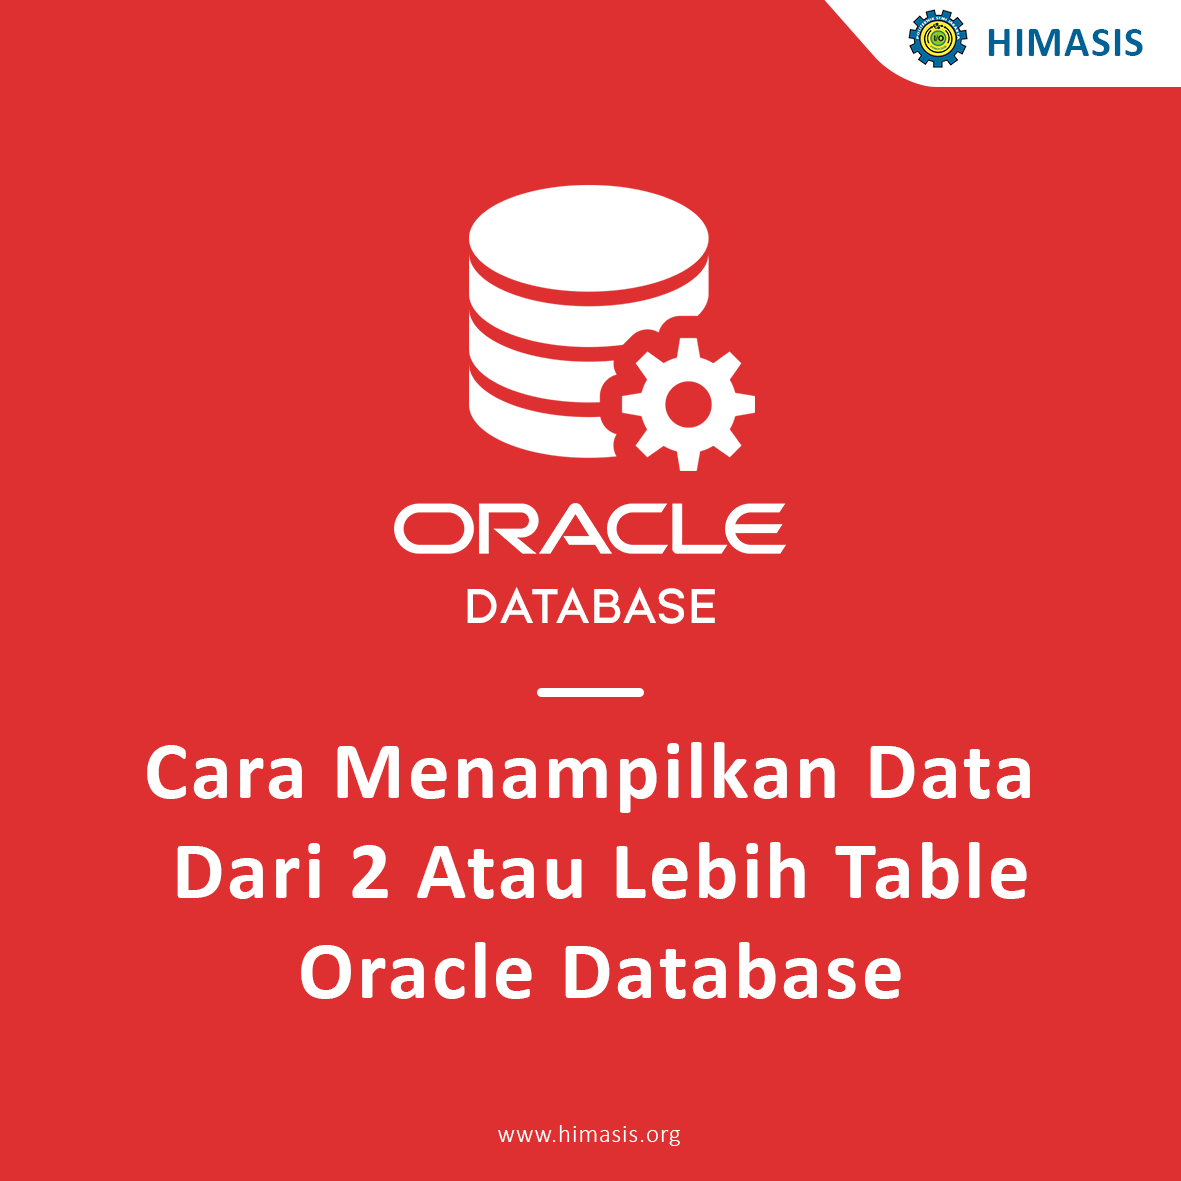 Cara Menampilkan Data Dari 2 Atau Lebih Table Oracle Database